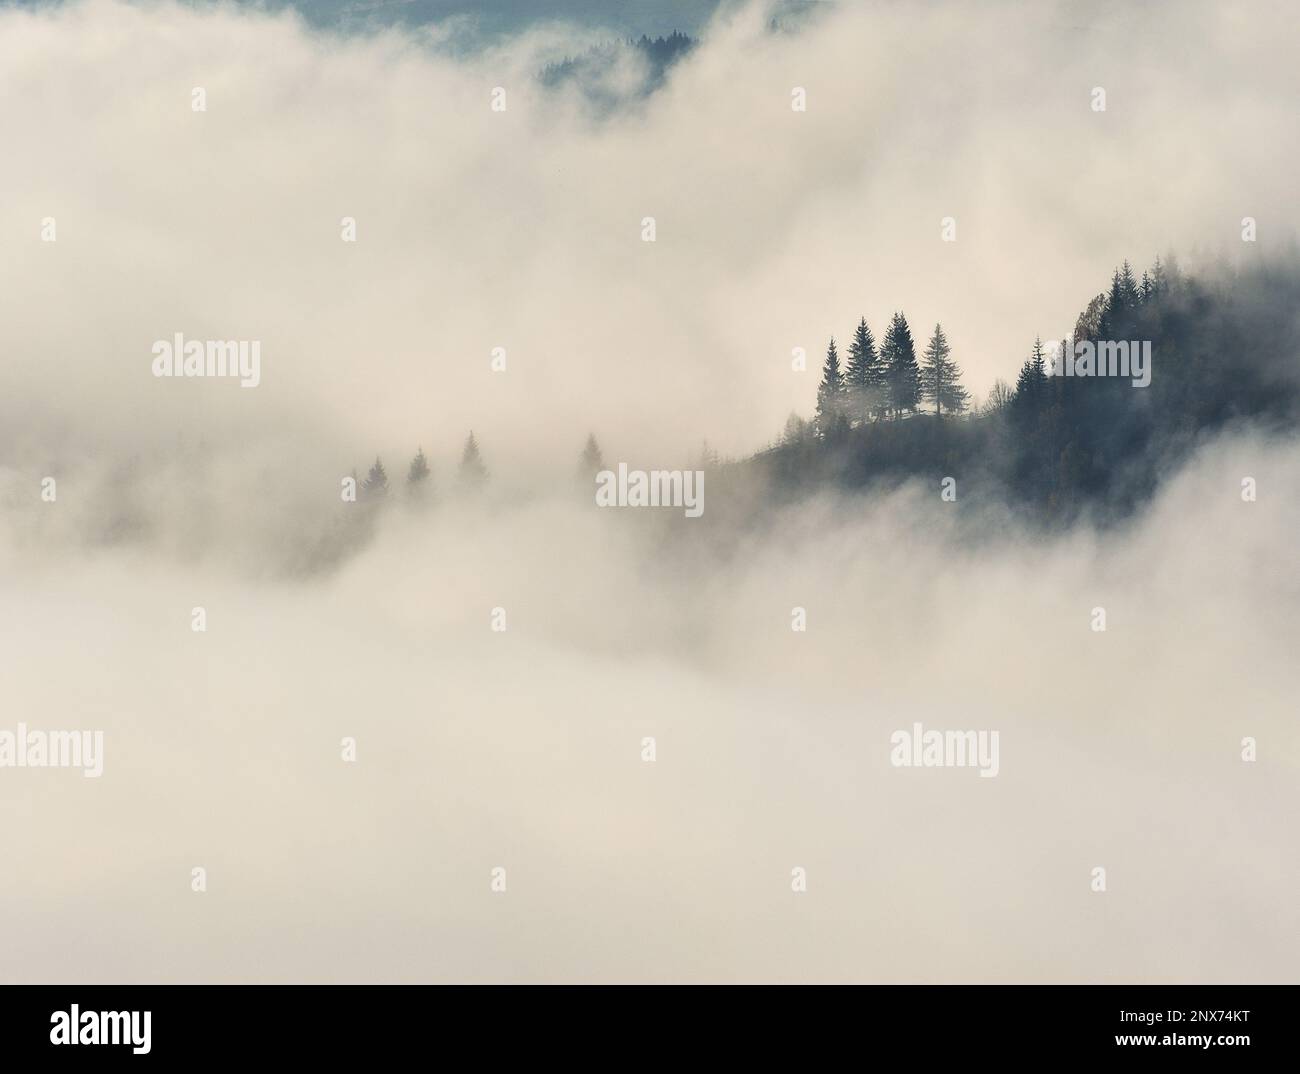 Silhouettes de montagne dans le brouillard. Paysage graphique sur le thème des montagnes Banque D'Images